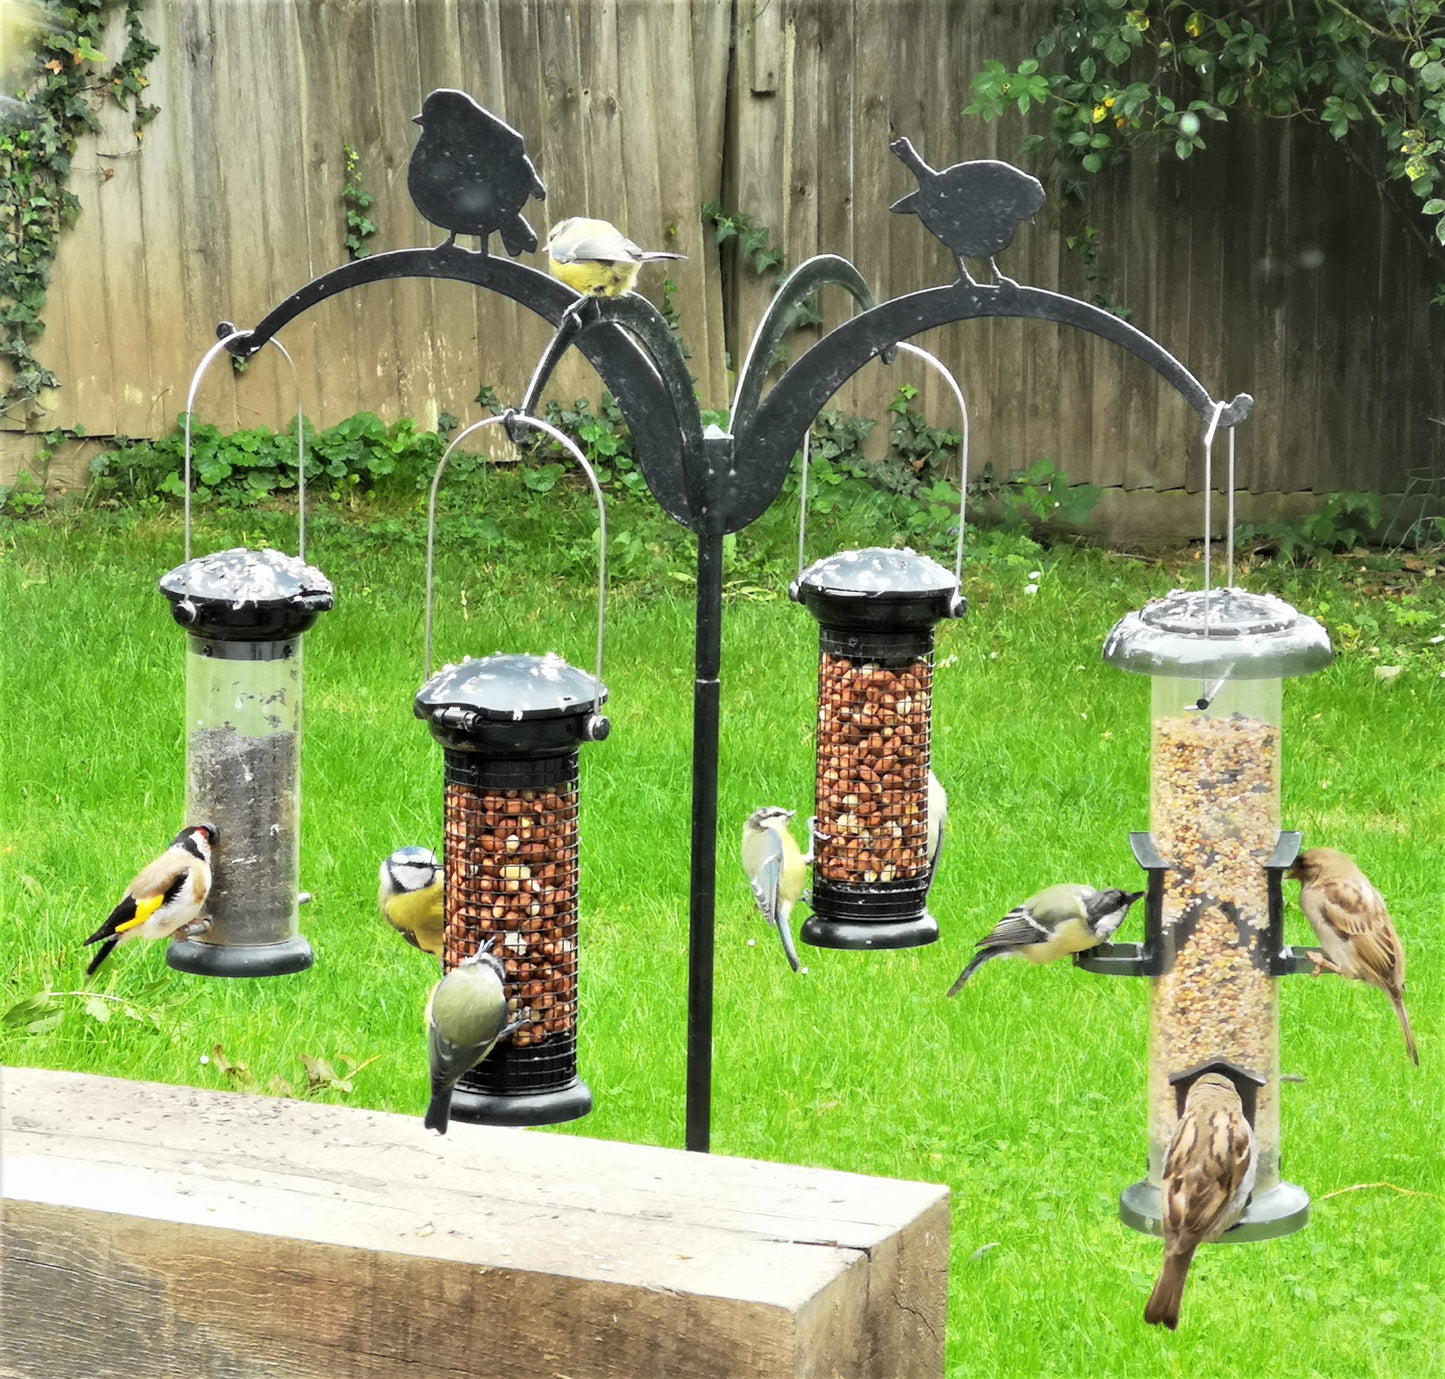 Hanging Bird feeders